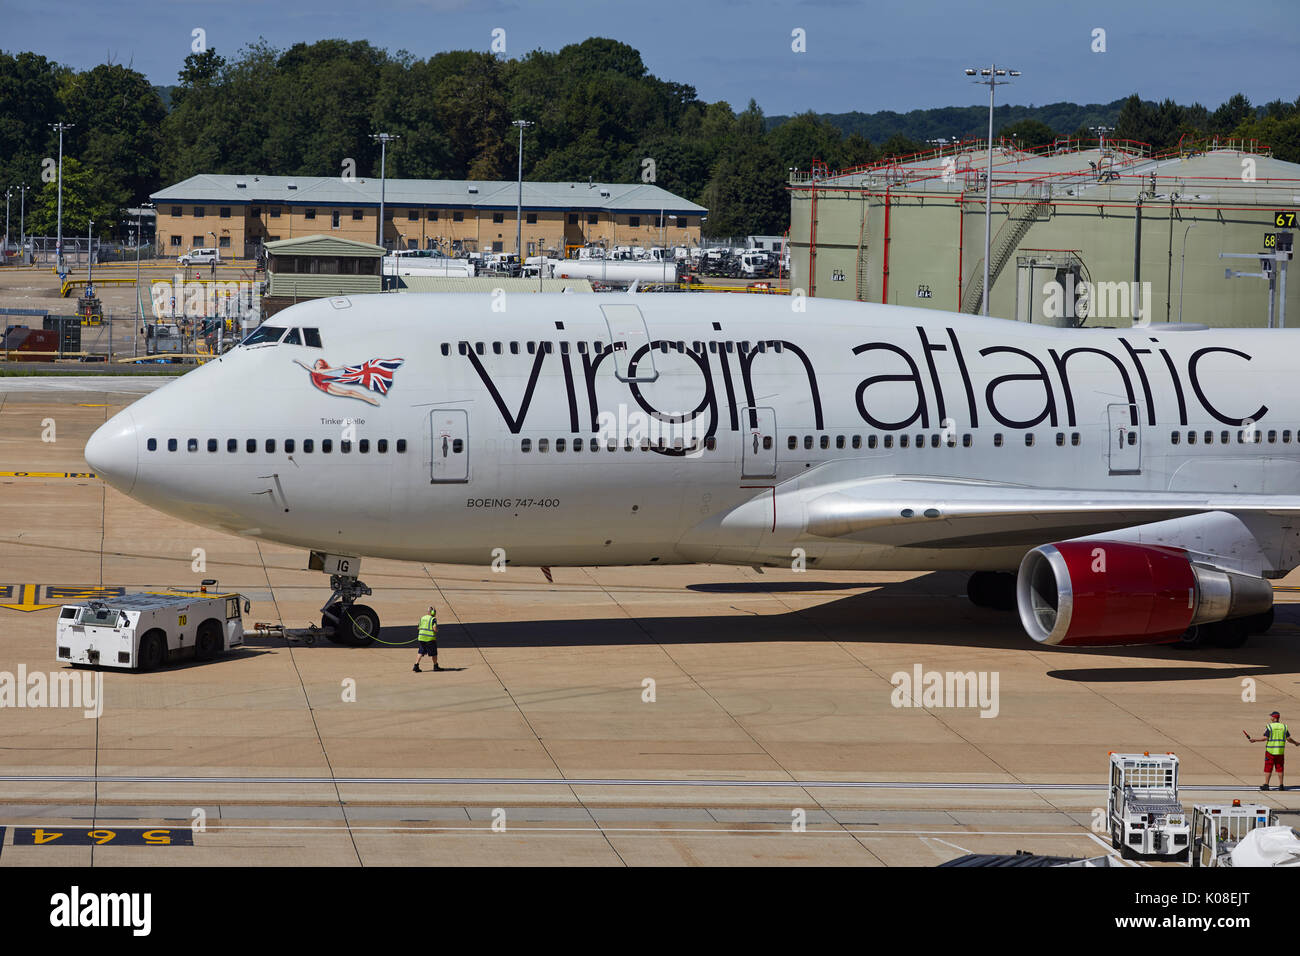 Tracteurs Pushback ou remorqueur se déplace Virgin Atlantics livery 474400 Tinker Belle à l'aéroport de Gatwick's North Terminal Banque D'Images